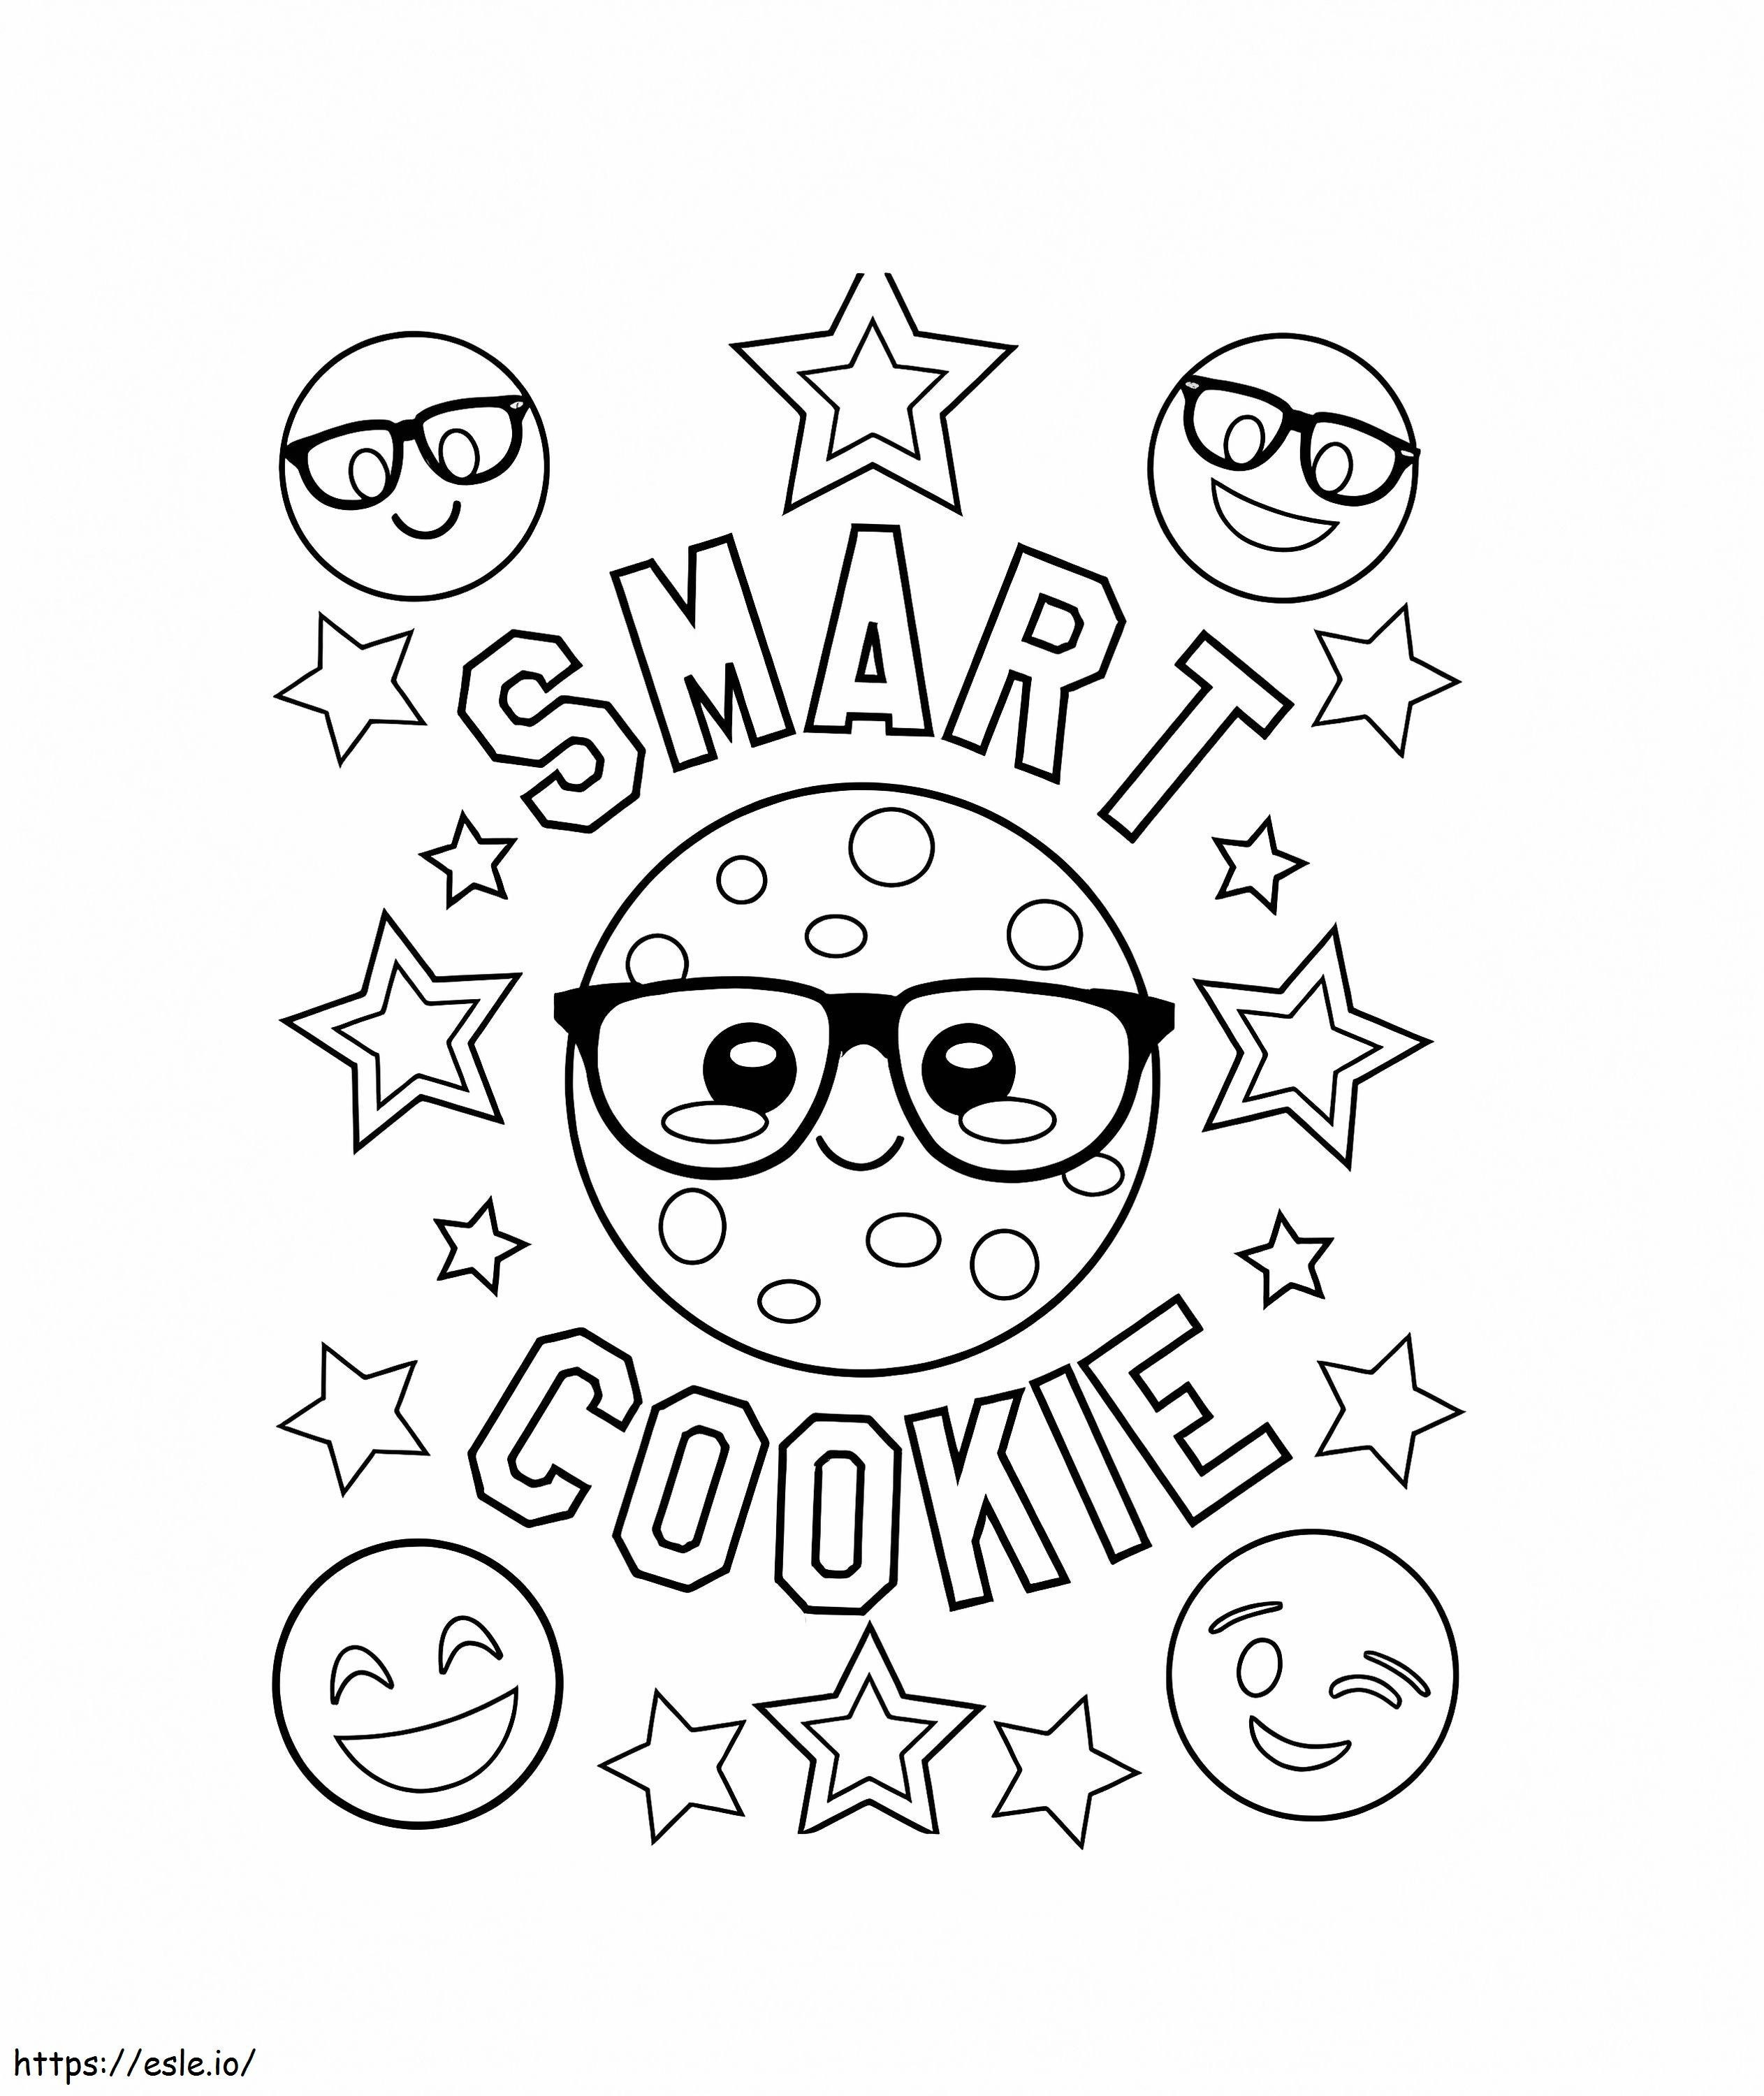 Coloriage Emojis de cookies intelligents à imprimer dessin